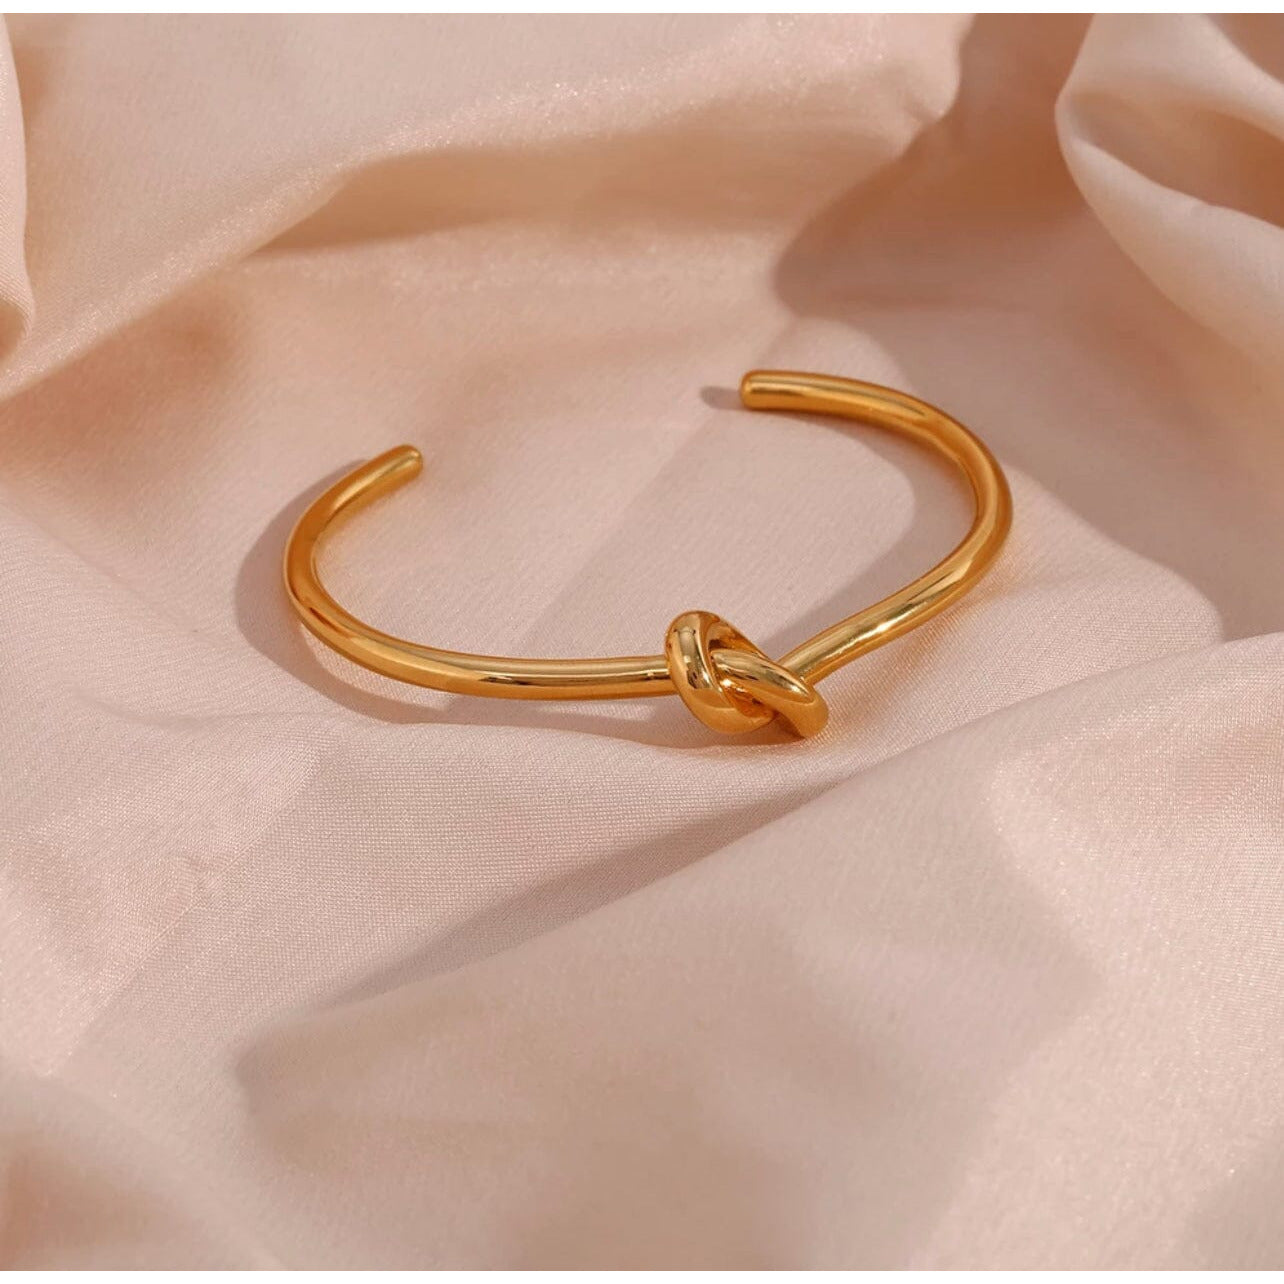 Lupia Gold Love Knot Cuff Bracelet